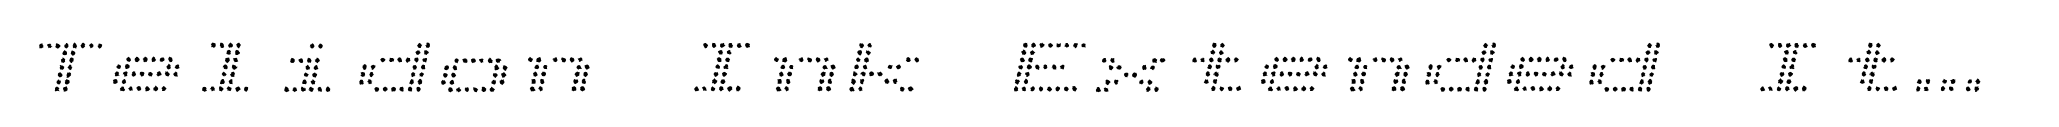 Telidon Ink Extended Italic image